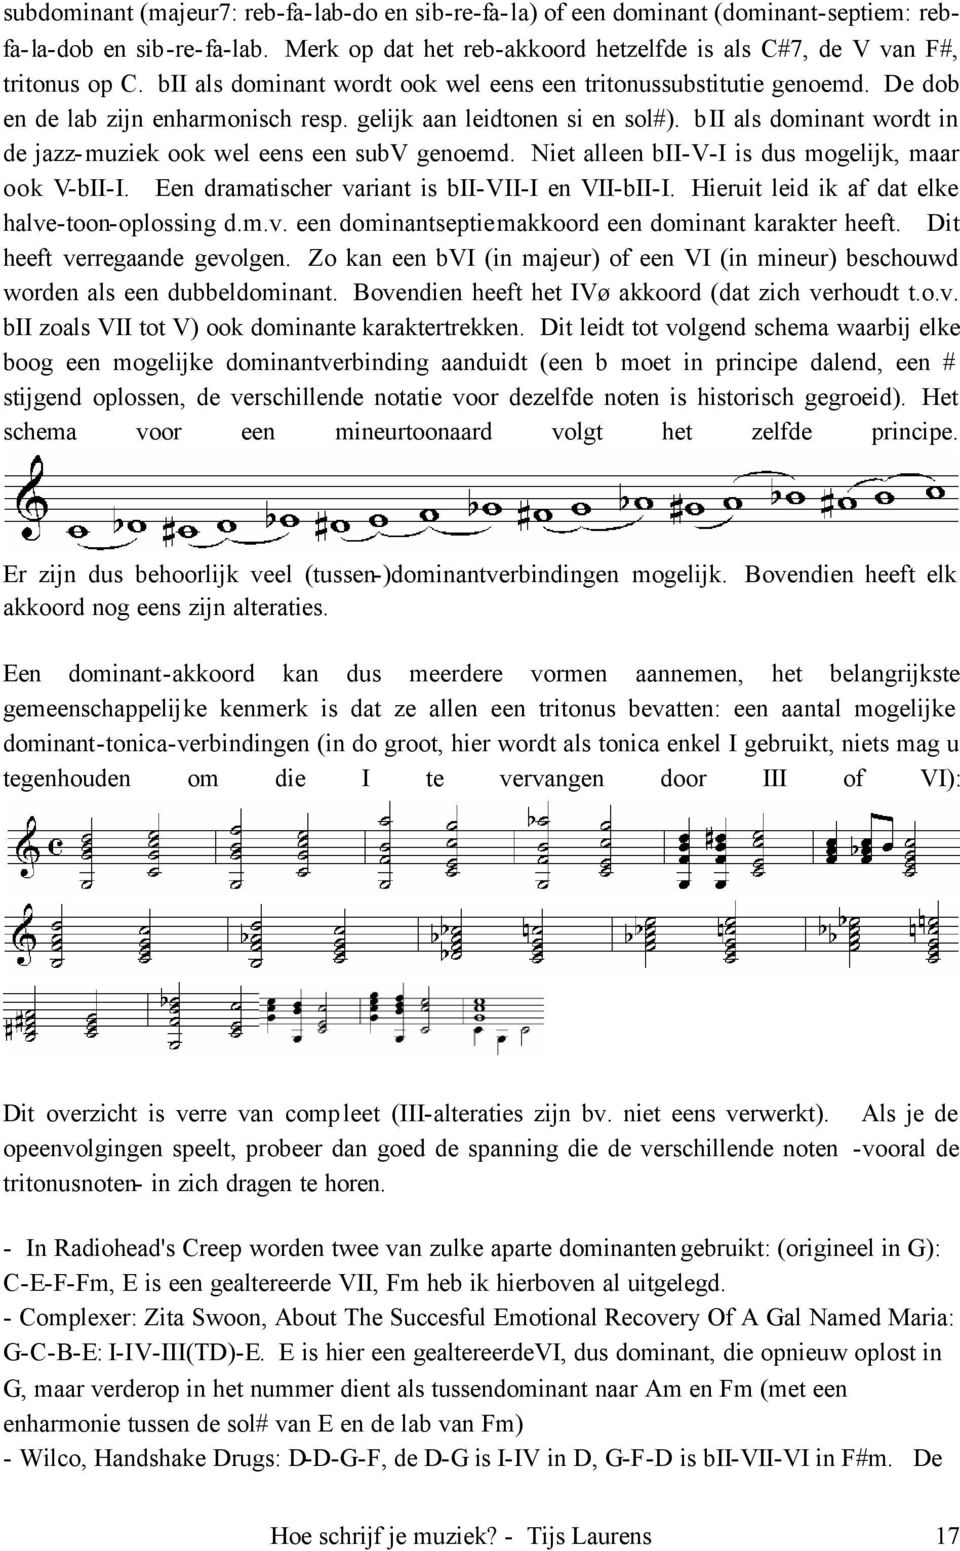 bii als dominant wordt in de jazz-muziek ook wel eens een subv genoemd. Niet alleen bii-v-i is dus mogelijk, maar ook V-bII-I. Een dramatischer variant is bii-vii-i en VII-bII-I.